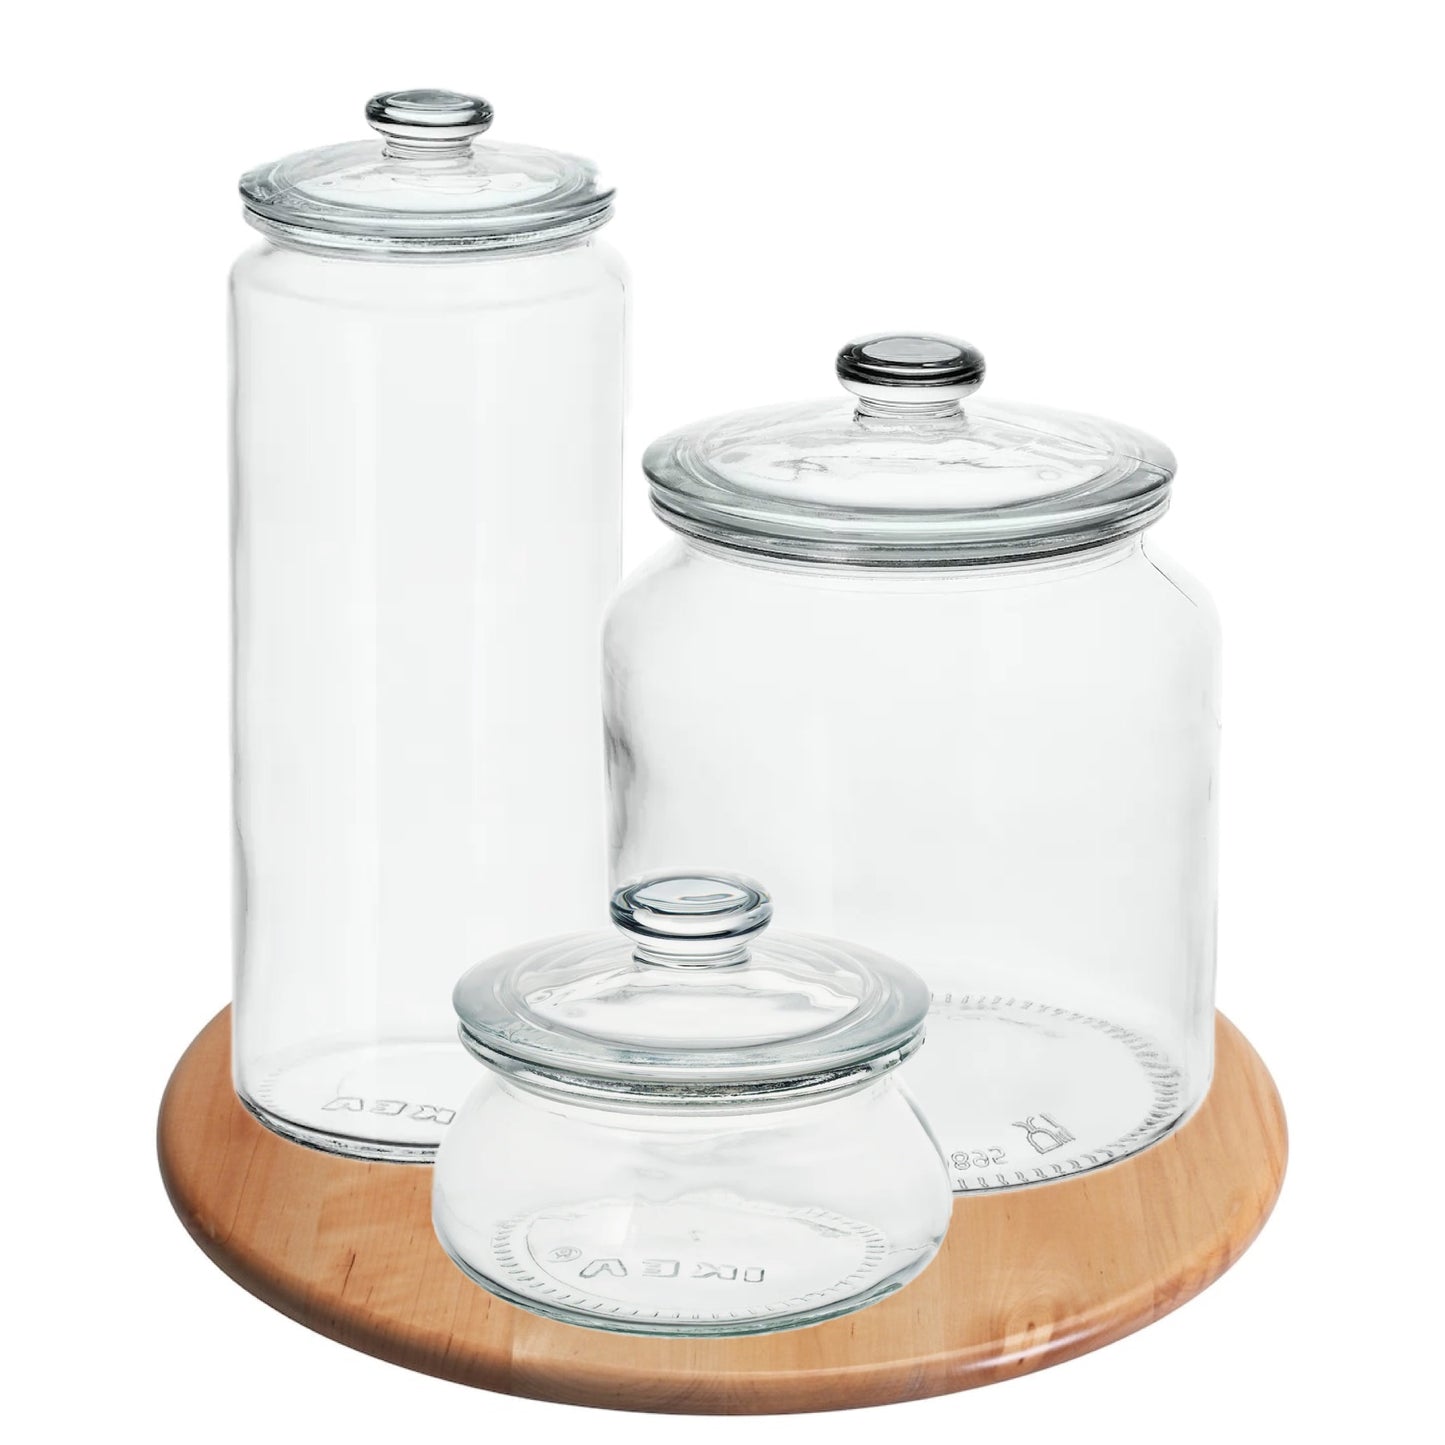 SNUDDA/VARDAGEN food jar set